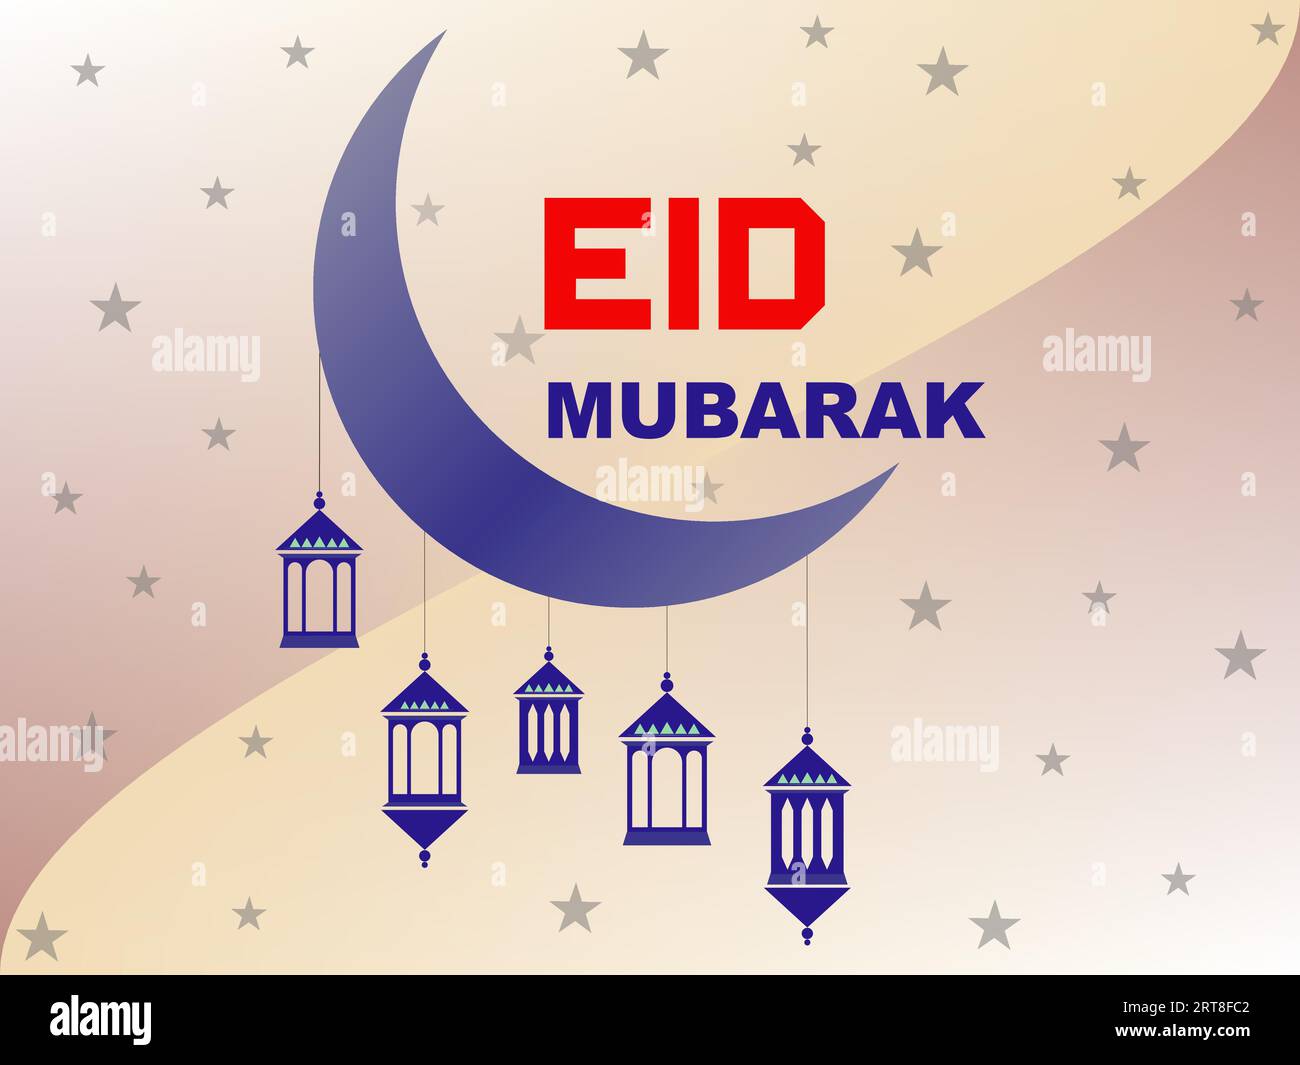 Sfondo islamico EID Mubarak con Moschea Crescent Moon e Lanterna. Il Ramadan kareem celebra lo striscione islamico del festival. Ramadan Mubarak è religioso Illustrazione Vettoriale